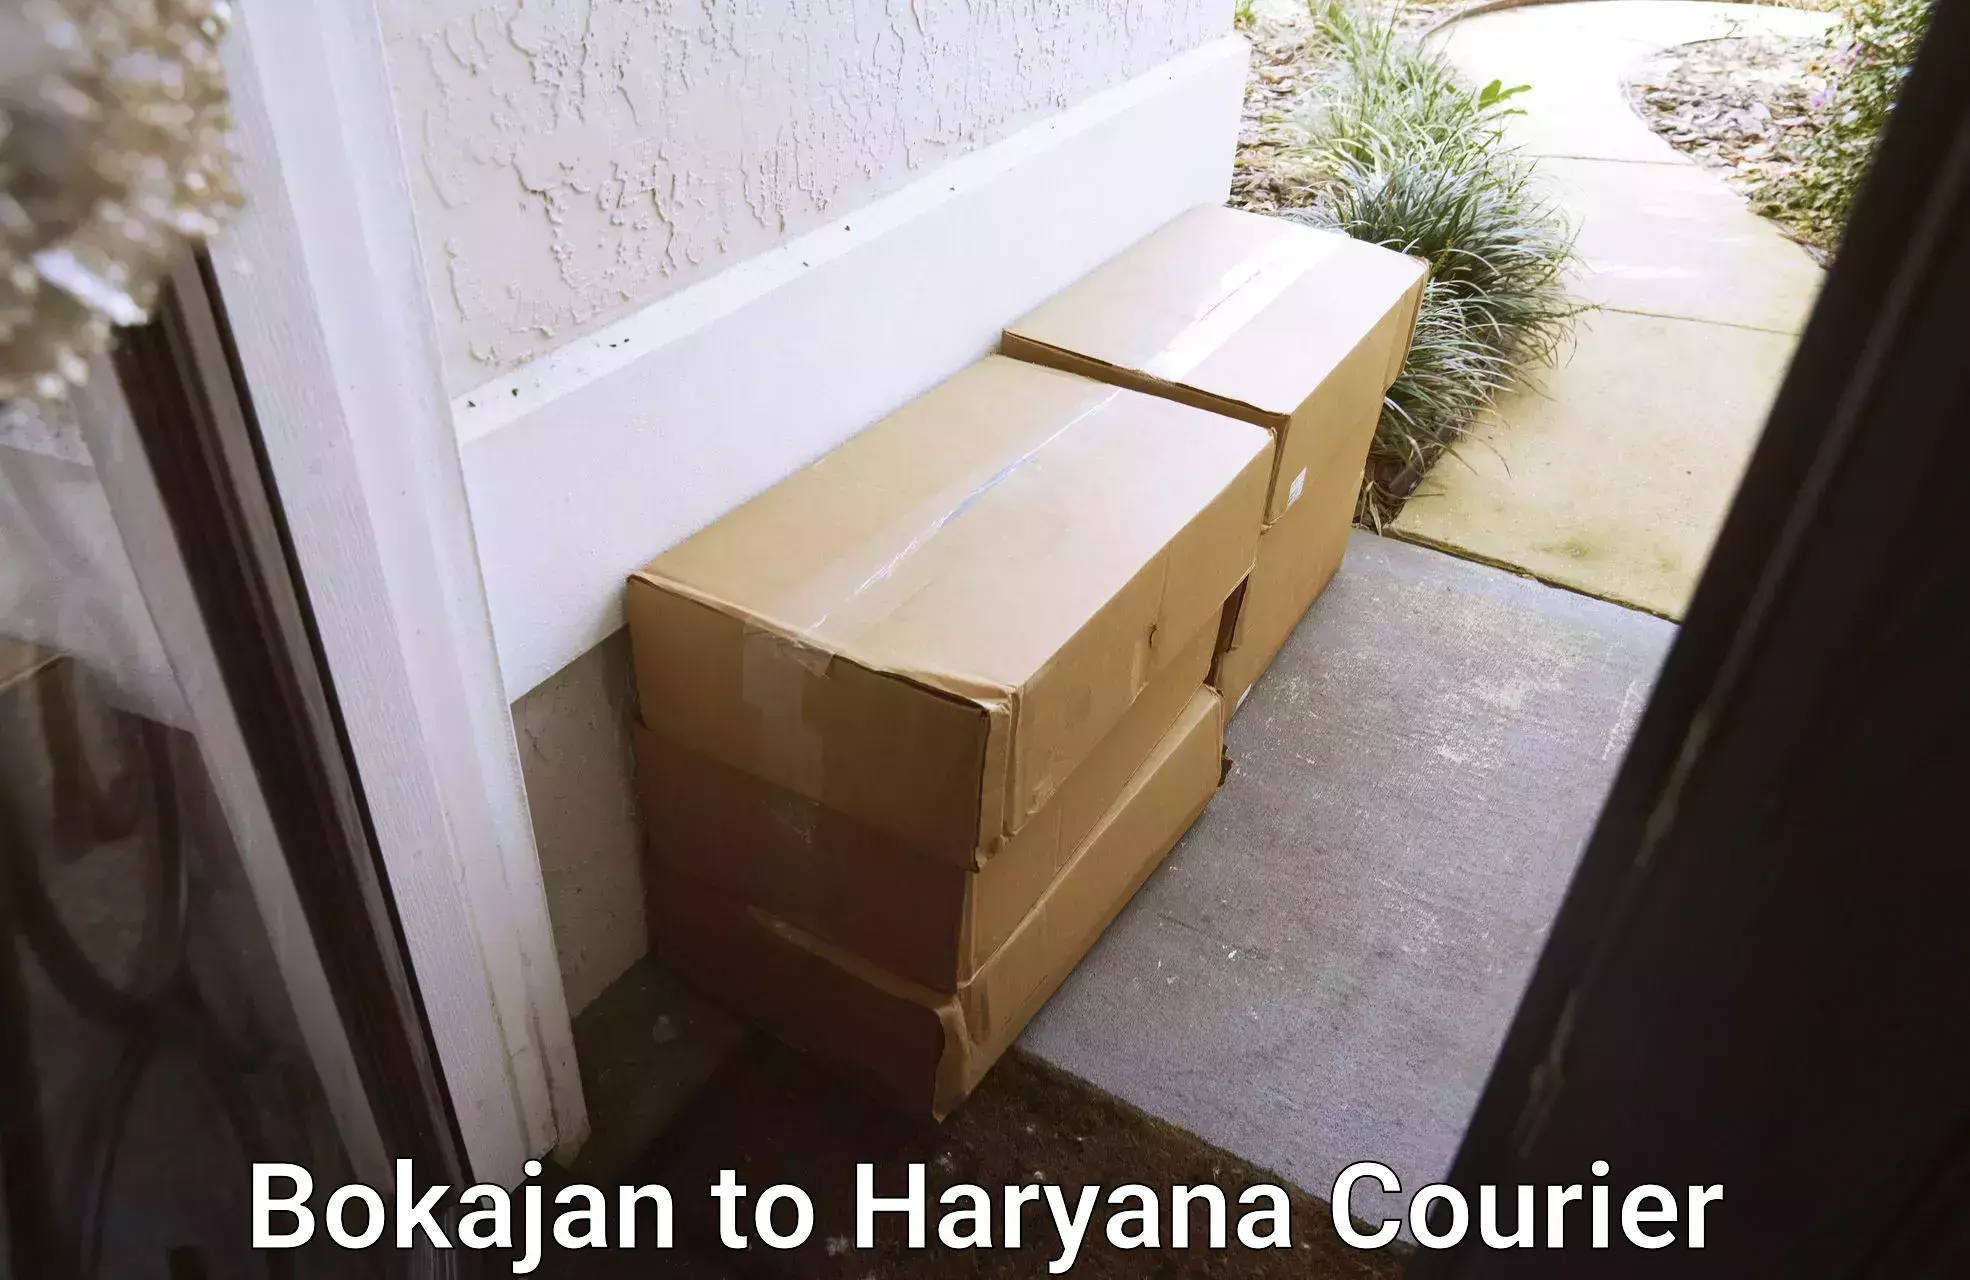 24/7 courier service Bokajan to Haryana